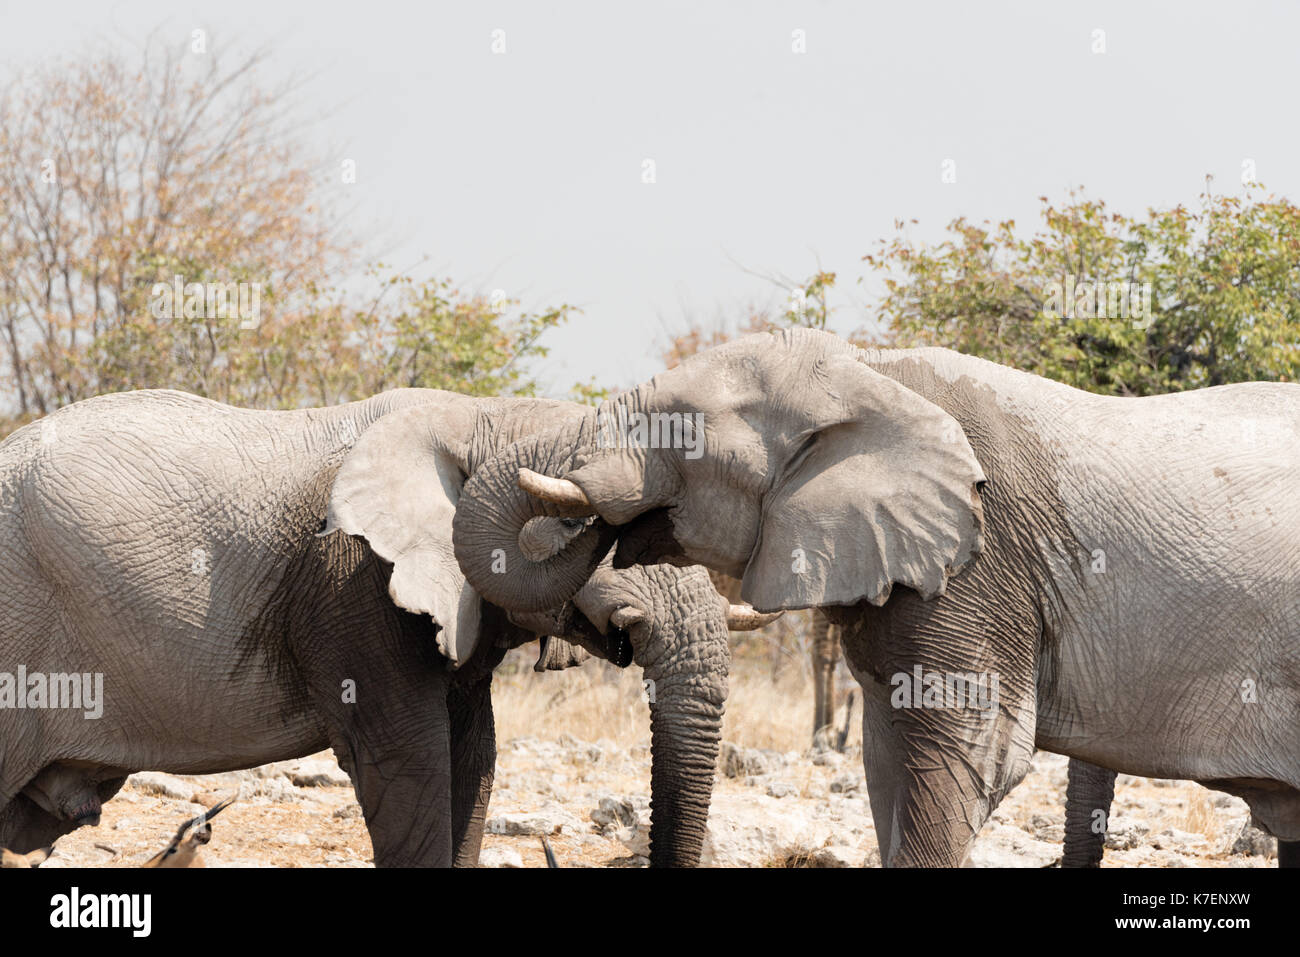 Elephant in Namibia's Etosha National Park Stock Photo